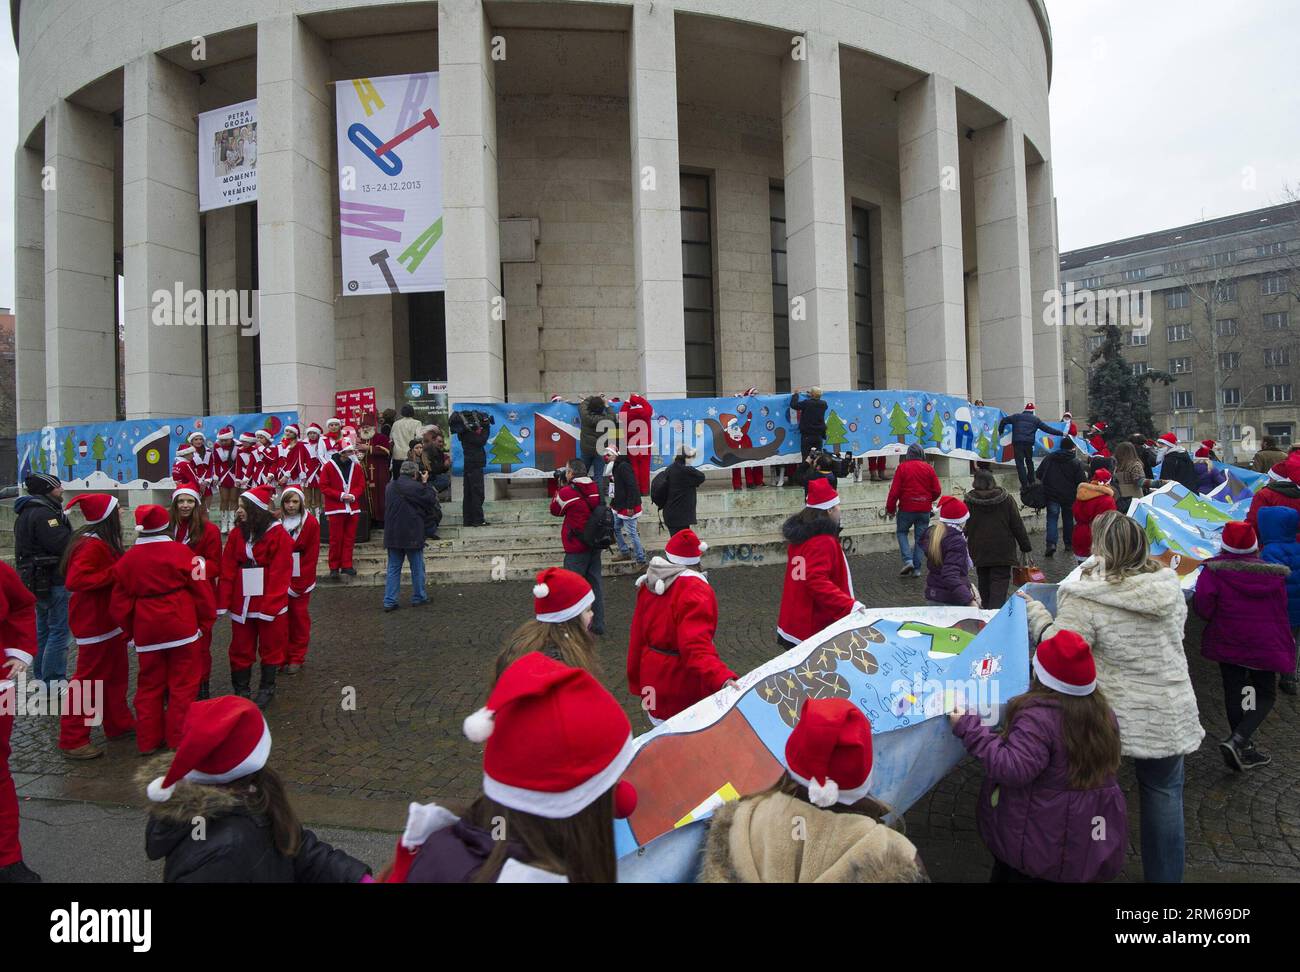 Junge Menschen, die als Weihnachtsmann gekleidet sind, tragen eine hundert Meter lange Weihnachtskarte durch die Innenstadt von Zagreb, Kroatien, am 21. Dezember 2013. Die riesige Weihnachtskarte mit den besten Wünschen der Menschen in Kroatien wird auf einer Weihnachtsmesse in Straßburg, Frankreich, ausgestellt. (Xinhua/Miso Lisanin)(yt) KROATIEN-ZAGREB-RIESIGE WEIHNACHTSKARTE PUBLICATIONxNOTxINxCHN Junge Prominente, die als Weihnachtsmann verkleidet sind, tragen eine 100 Meter lange Weihnachtskarte durch die Innenstadt von Zagreb Kroatien 21. Dezember 2013 die große Weihnachtskarte mit den besten Wünschen der Prominenten Kroatiens wird IN A C ausgestellt Stockfoto